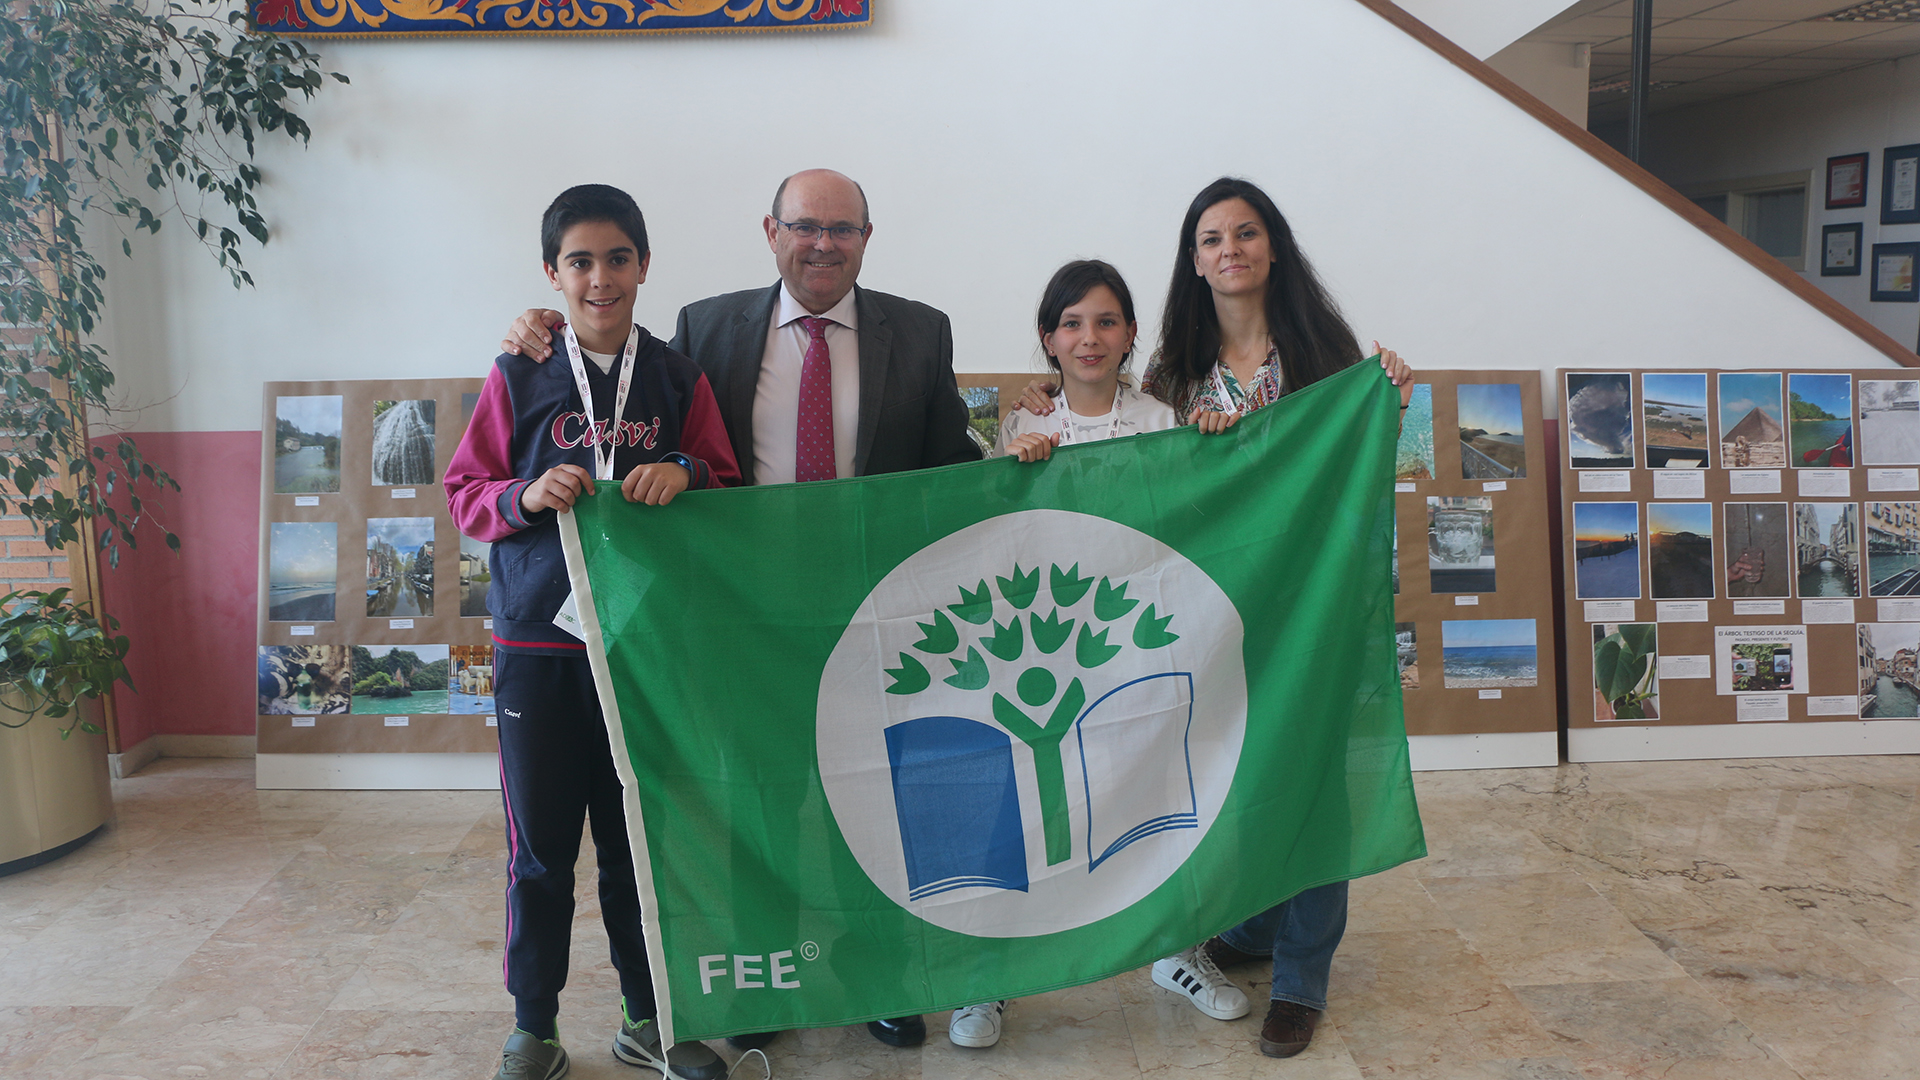 Don Ángel, director de Casvi Boadilla, posando con alumnos y la Bandera Verde de Ecoscuelas tras recibirla.